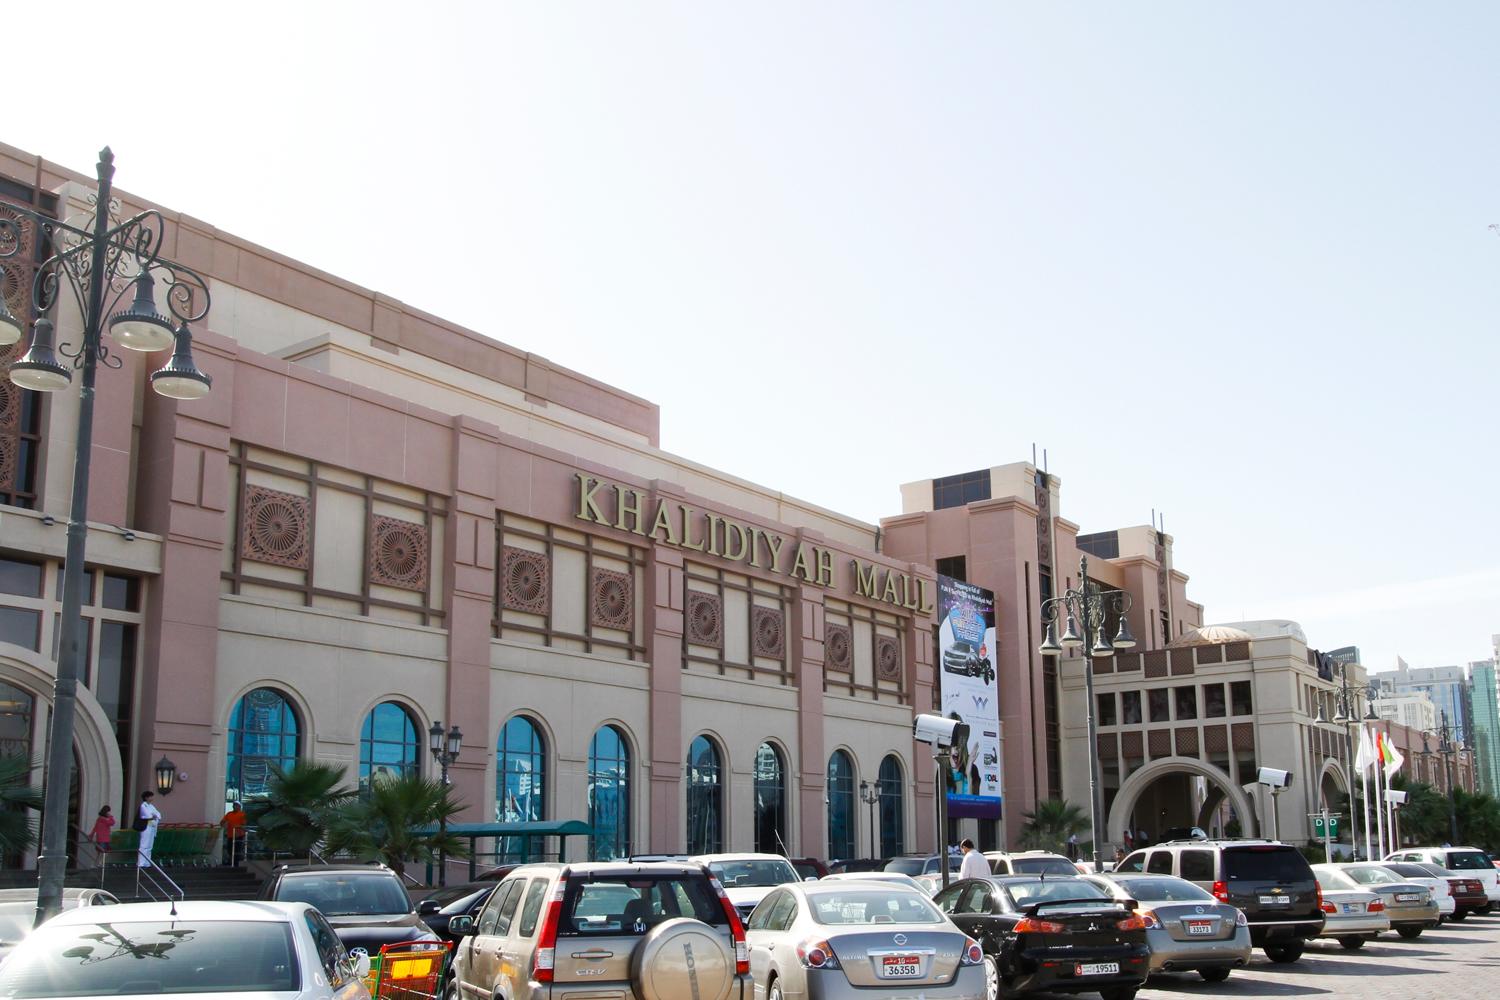 Khalidiyah Mall - Abu Dhabi